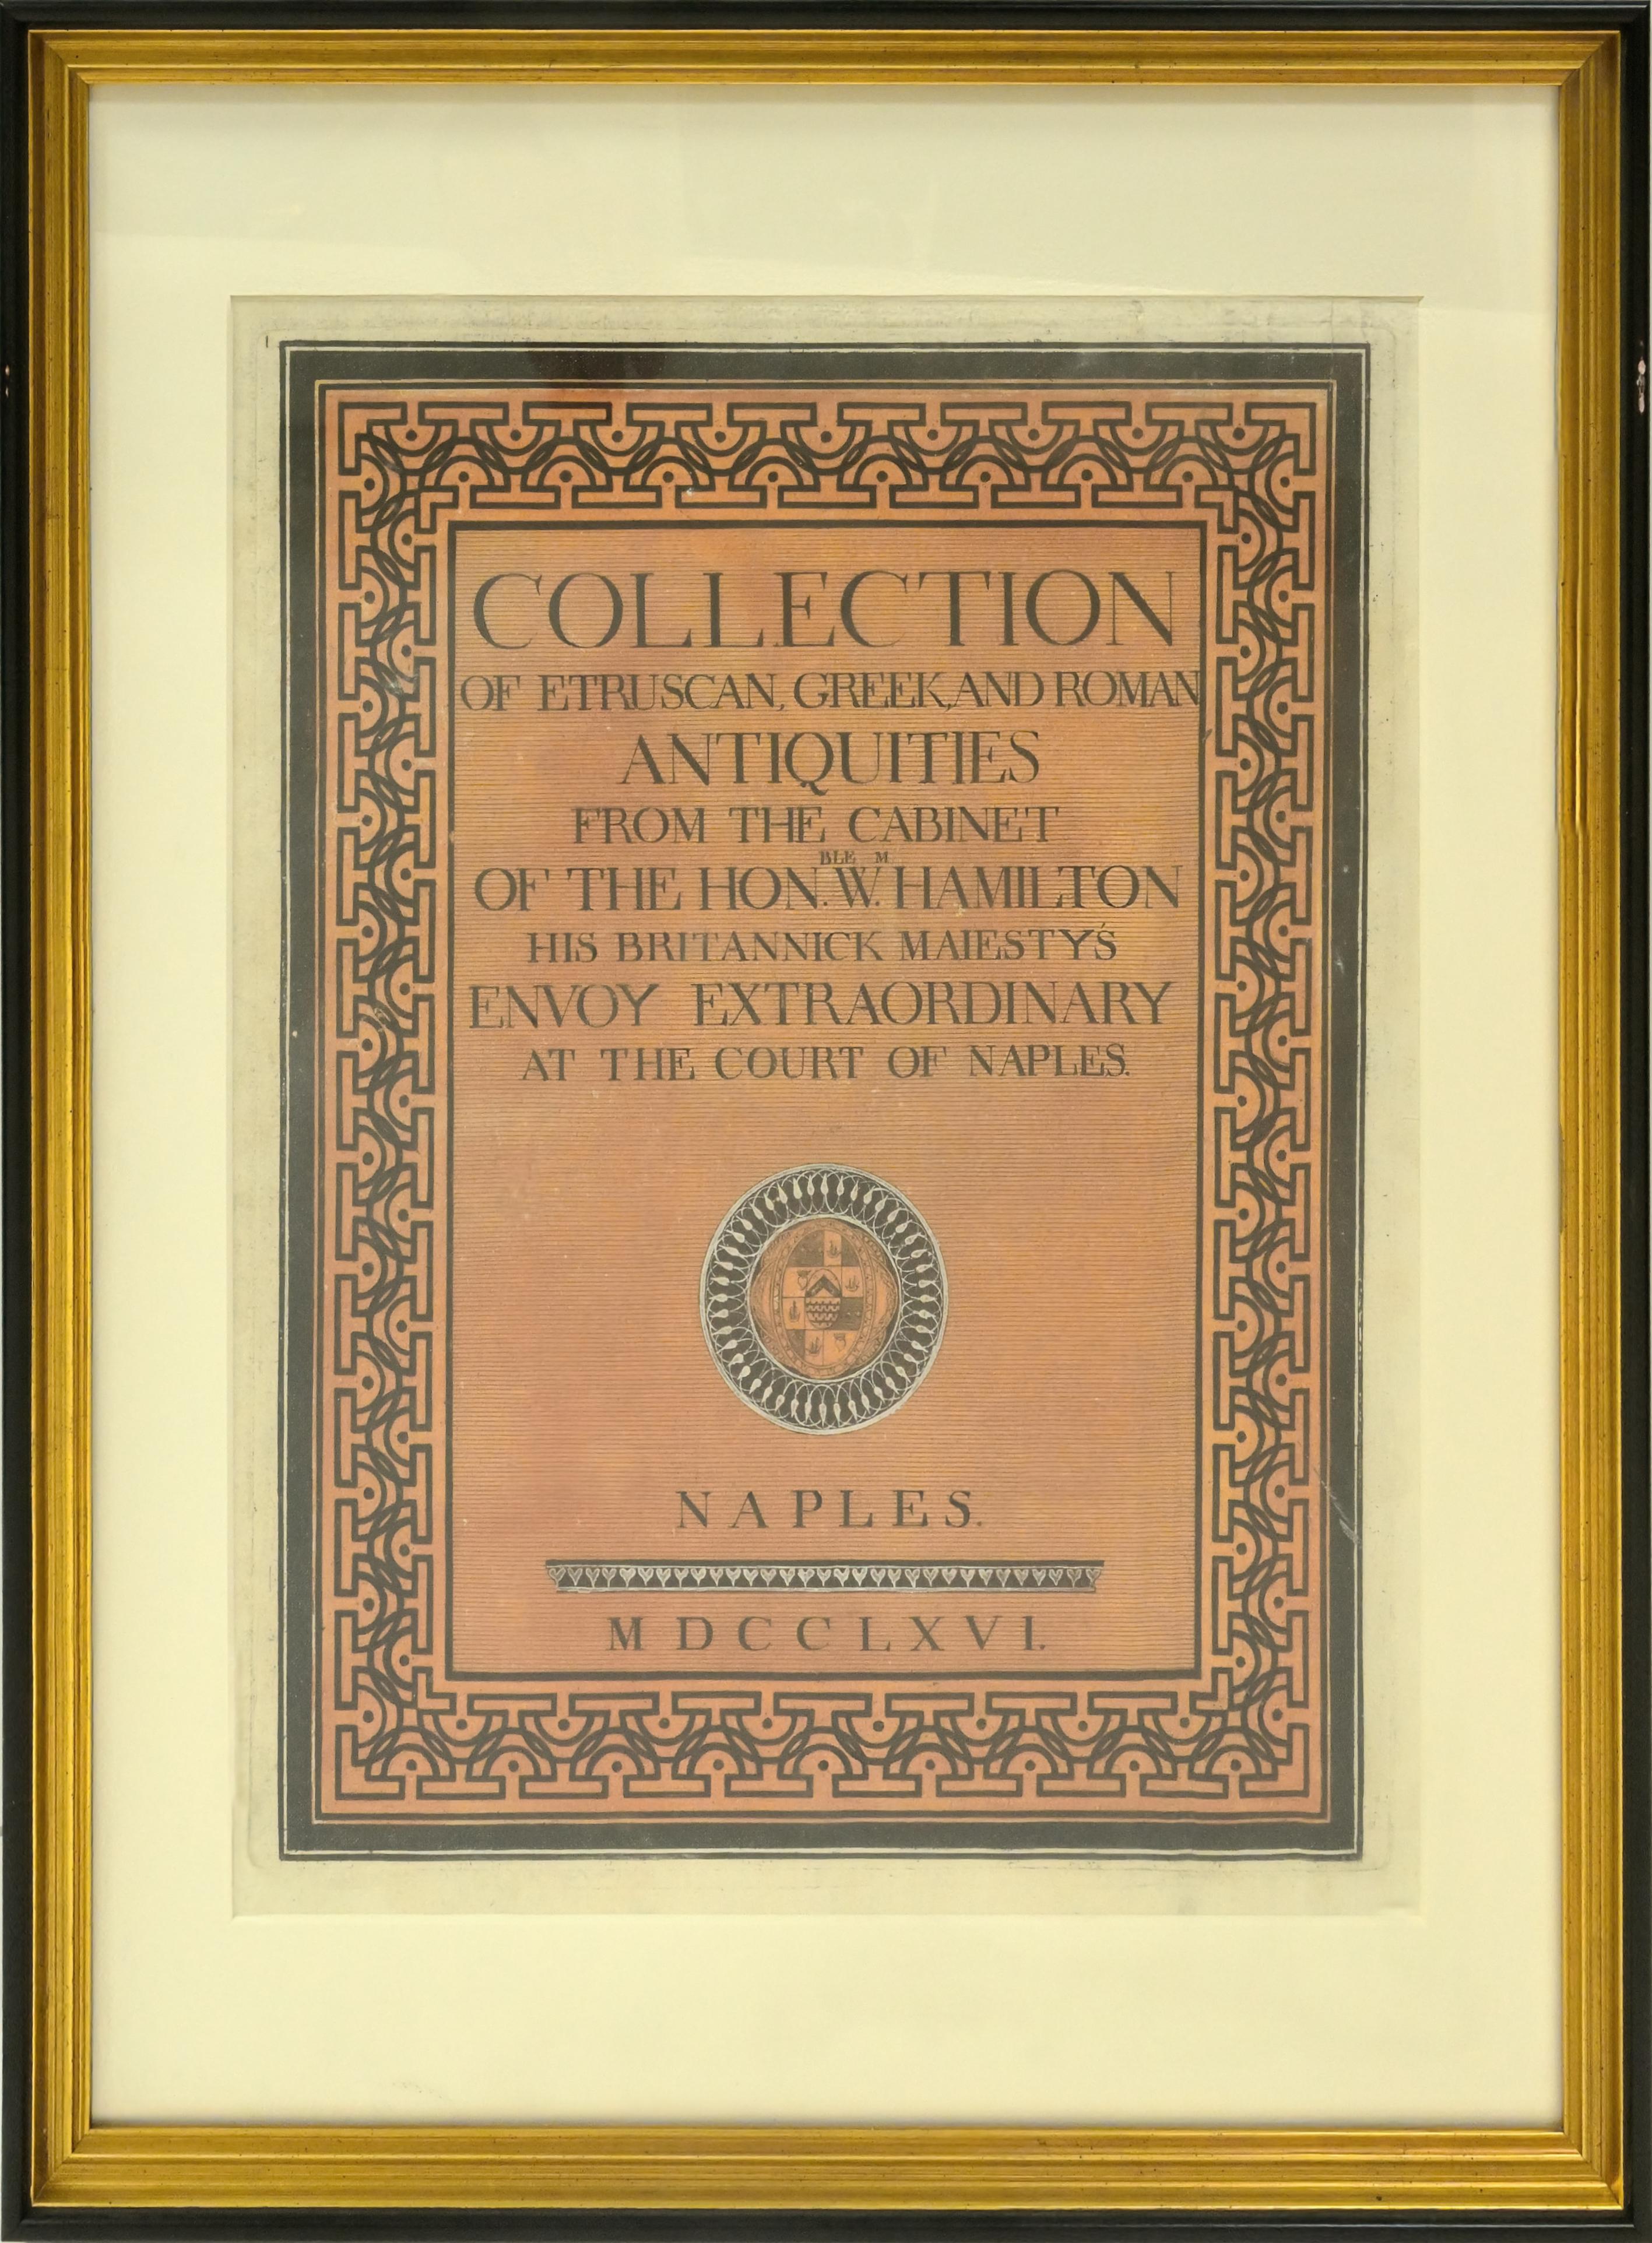 European Framed William Hamilton Antiquites Etrusques, Grecques Et Romain Cover For Sale